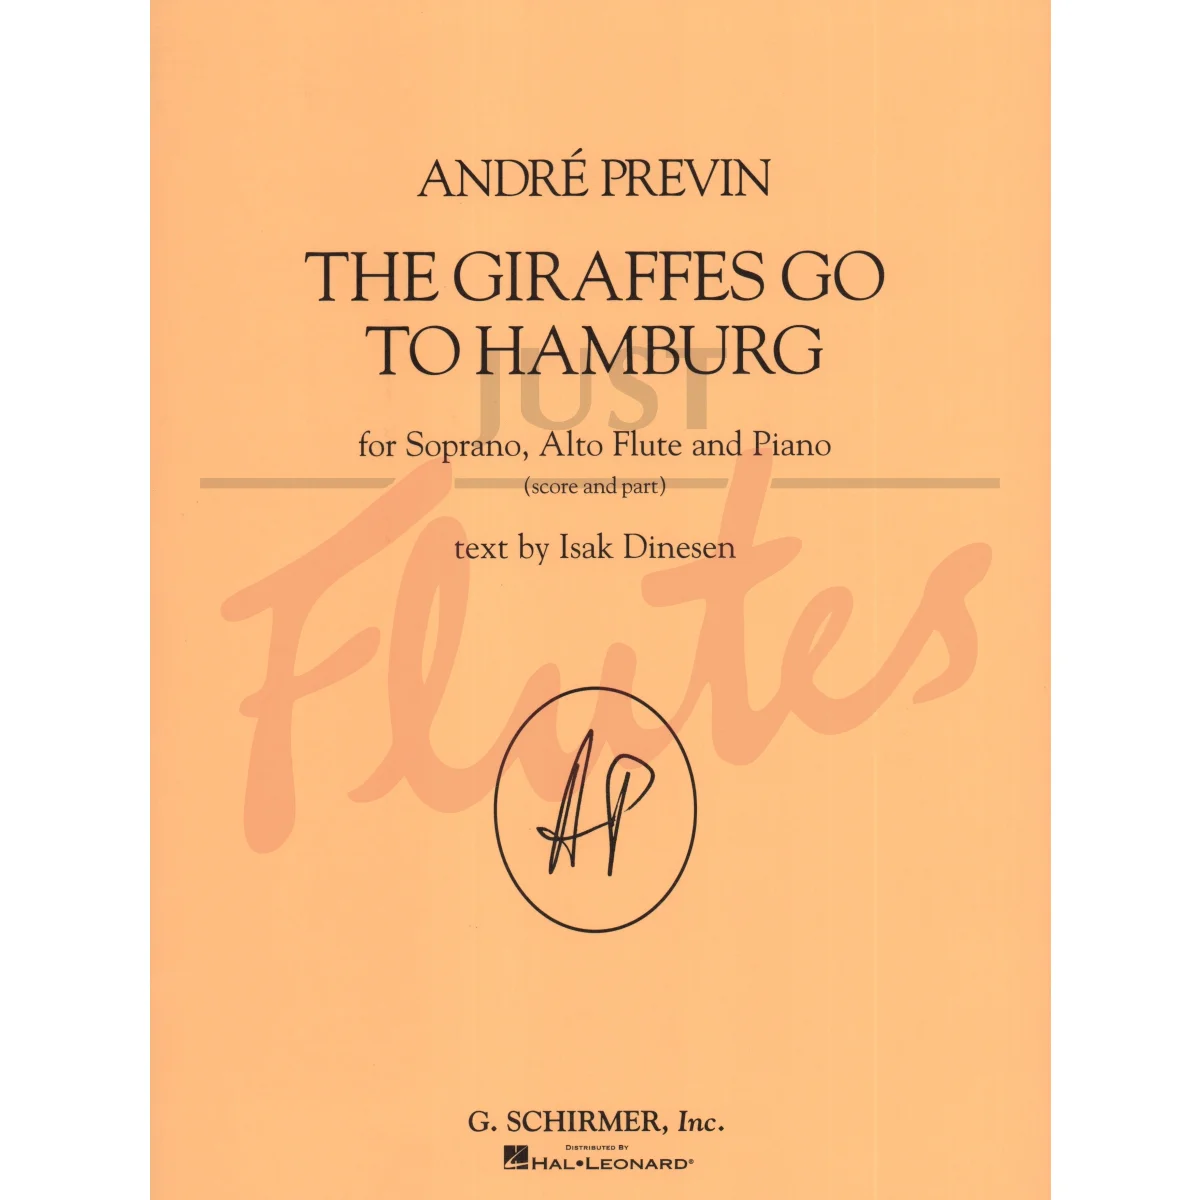 The Giraffes go to Hamburg for Soprano, Alto Flute and Piano